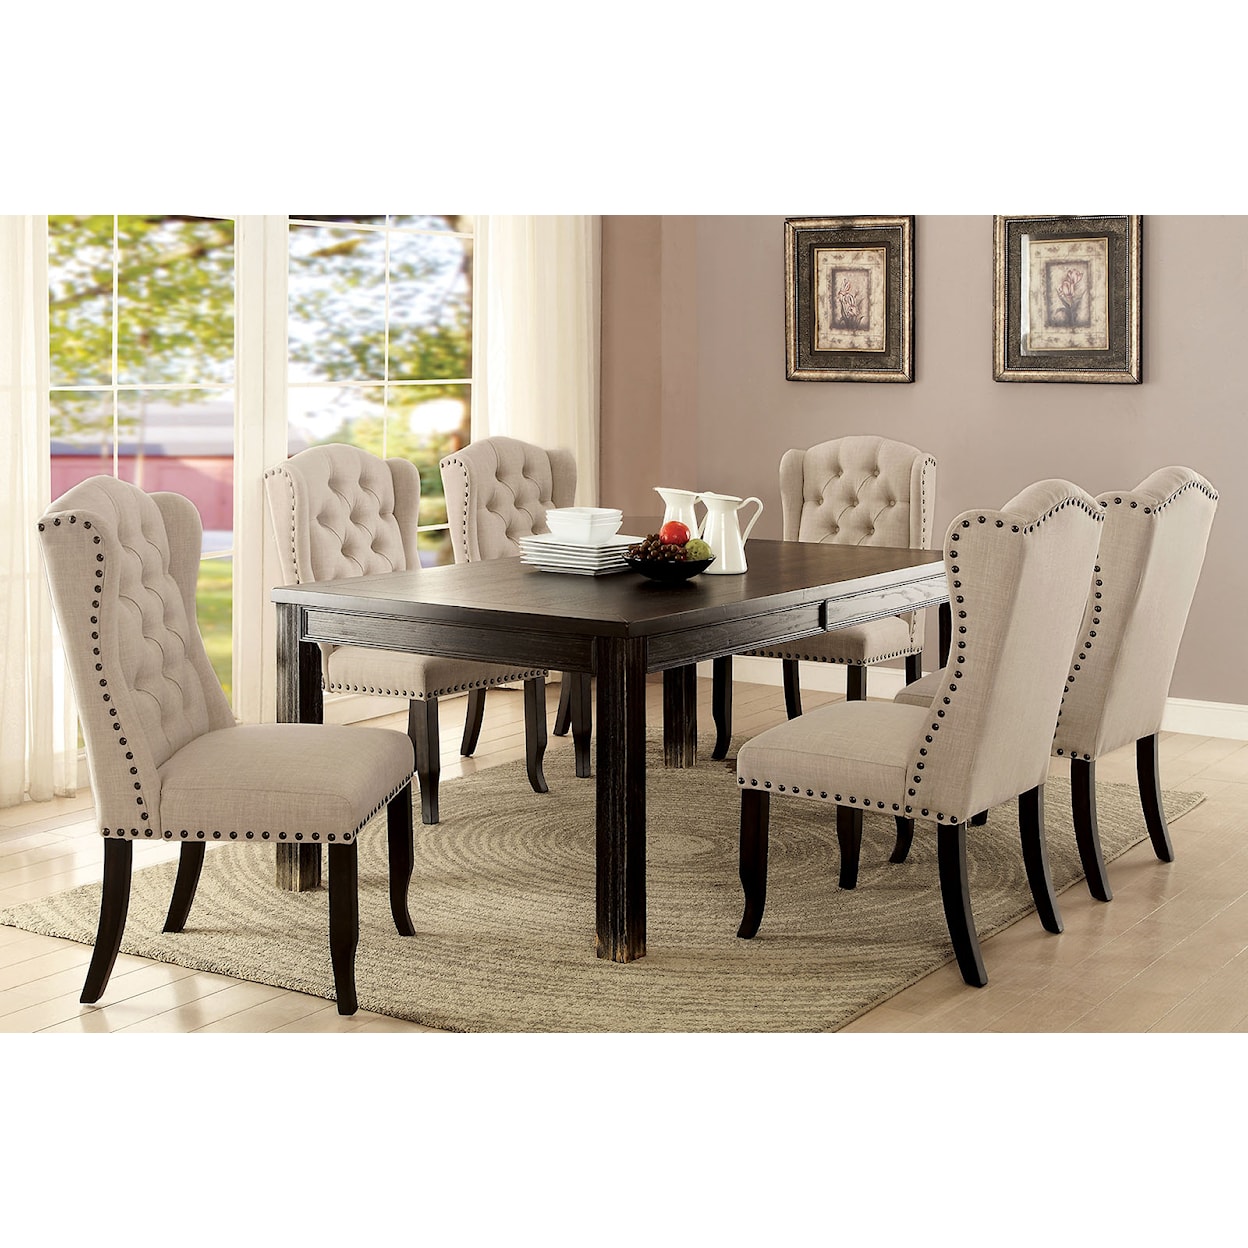 Furniture of America Sania III 72" Dining Table